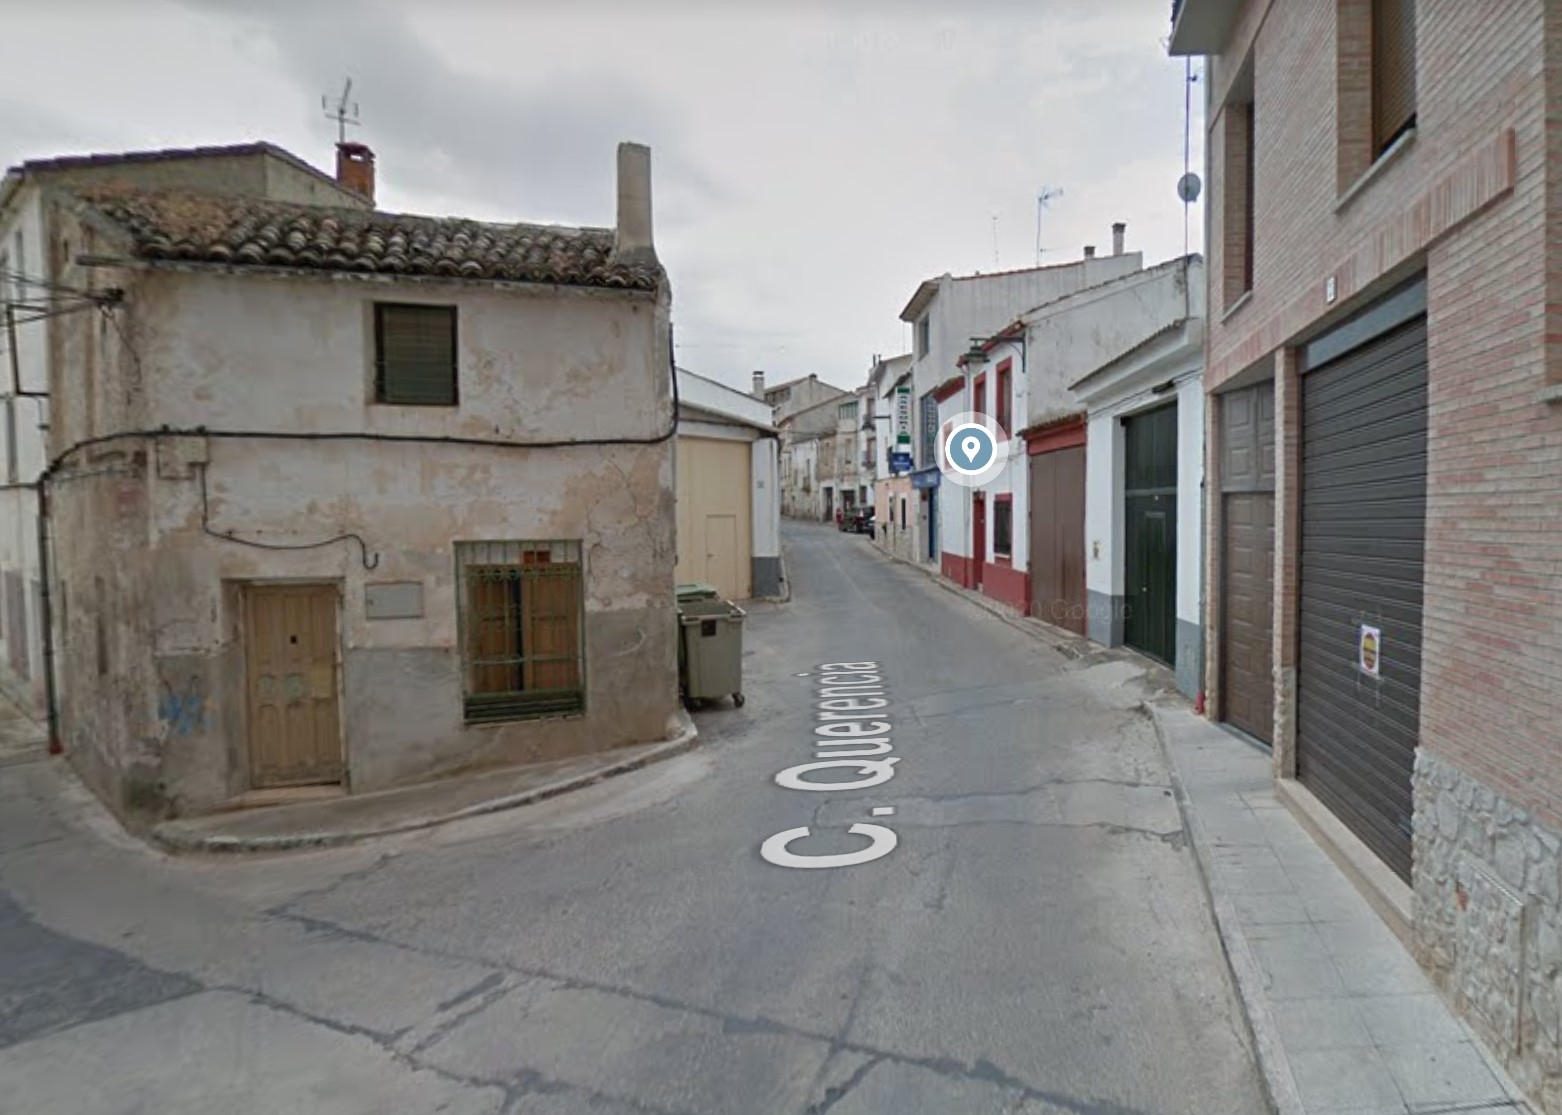 Foto: Calle Querencia en Mondéjar / Google Maps